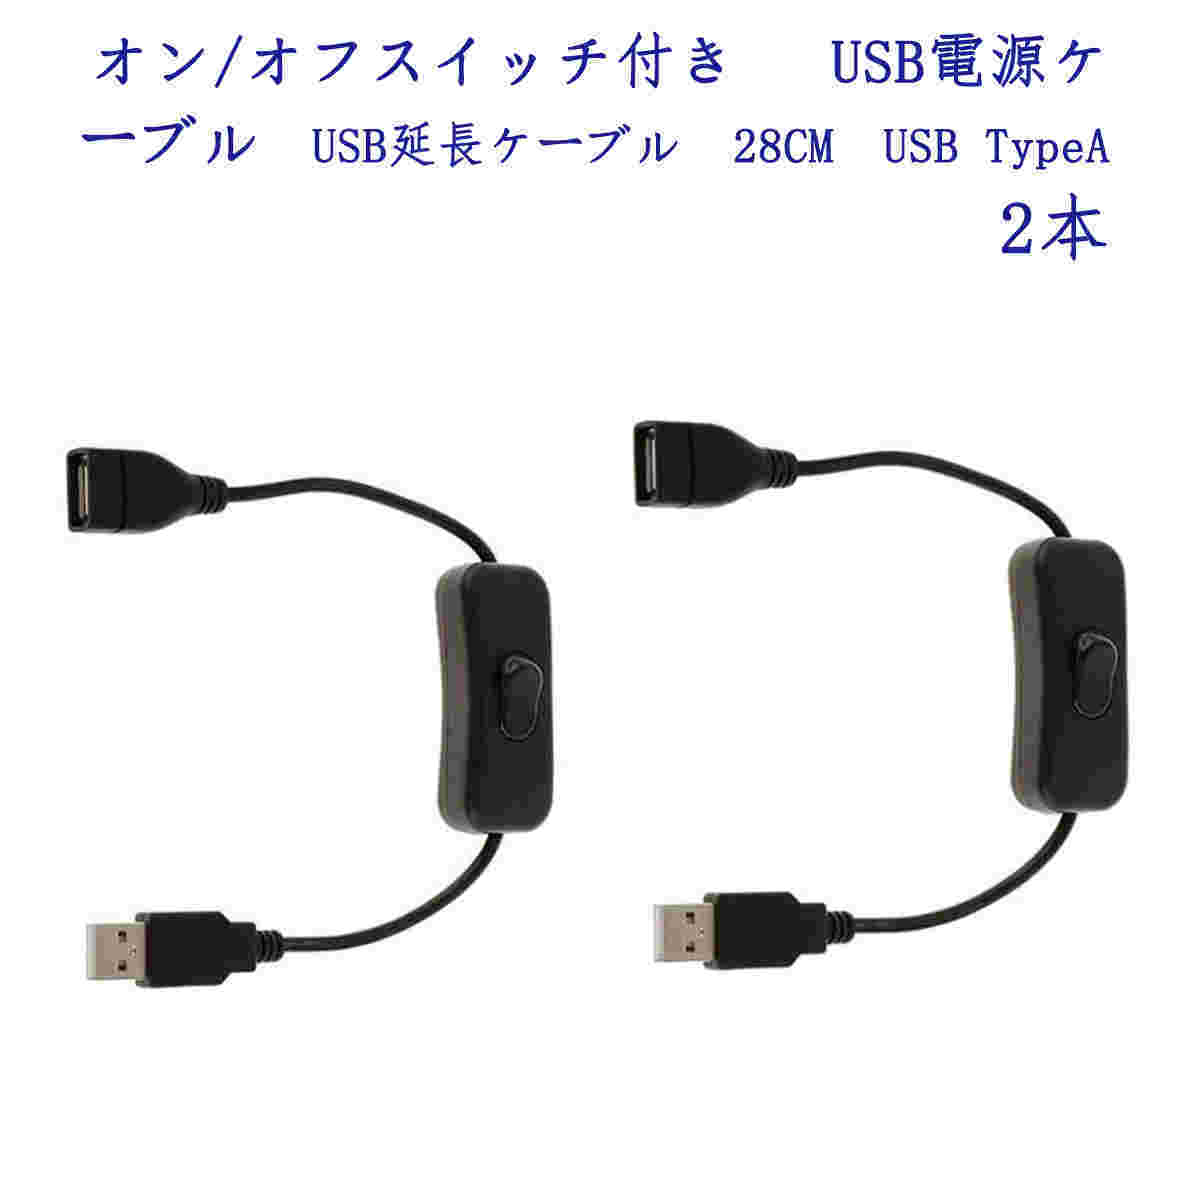 オン/オフスイッチ付き  USB電源ケーブル USB延長ケーブル 28CM USB TypeA 2本 ;ZYX000020;の画像1